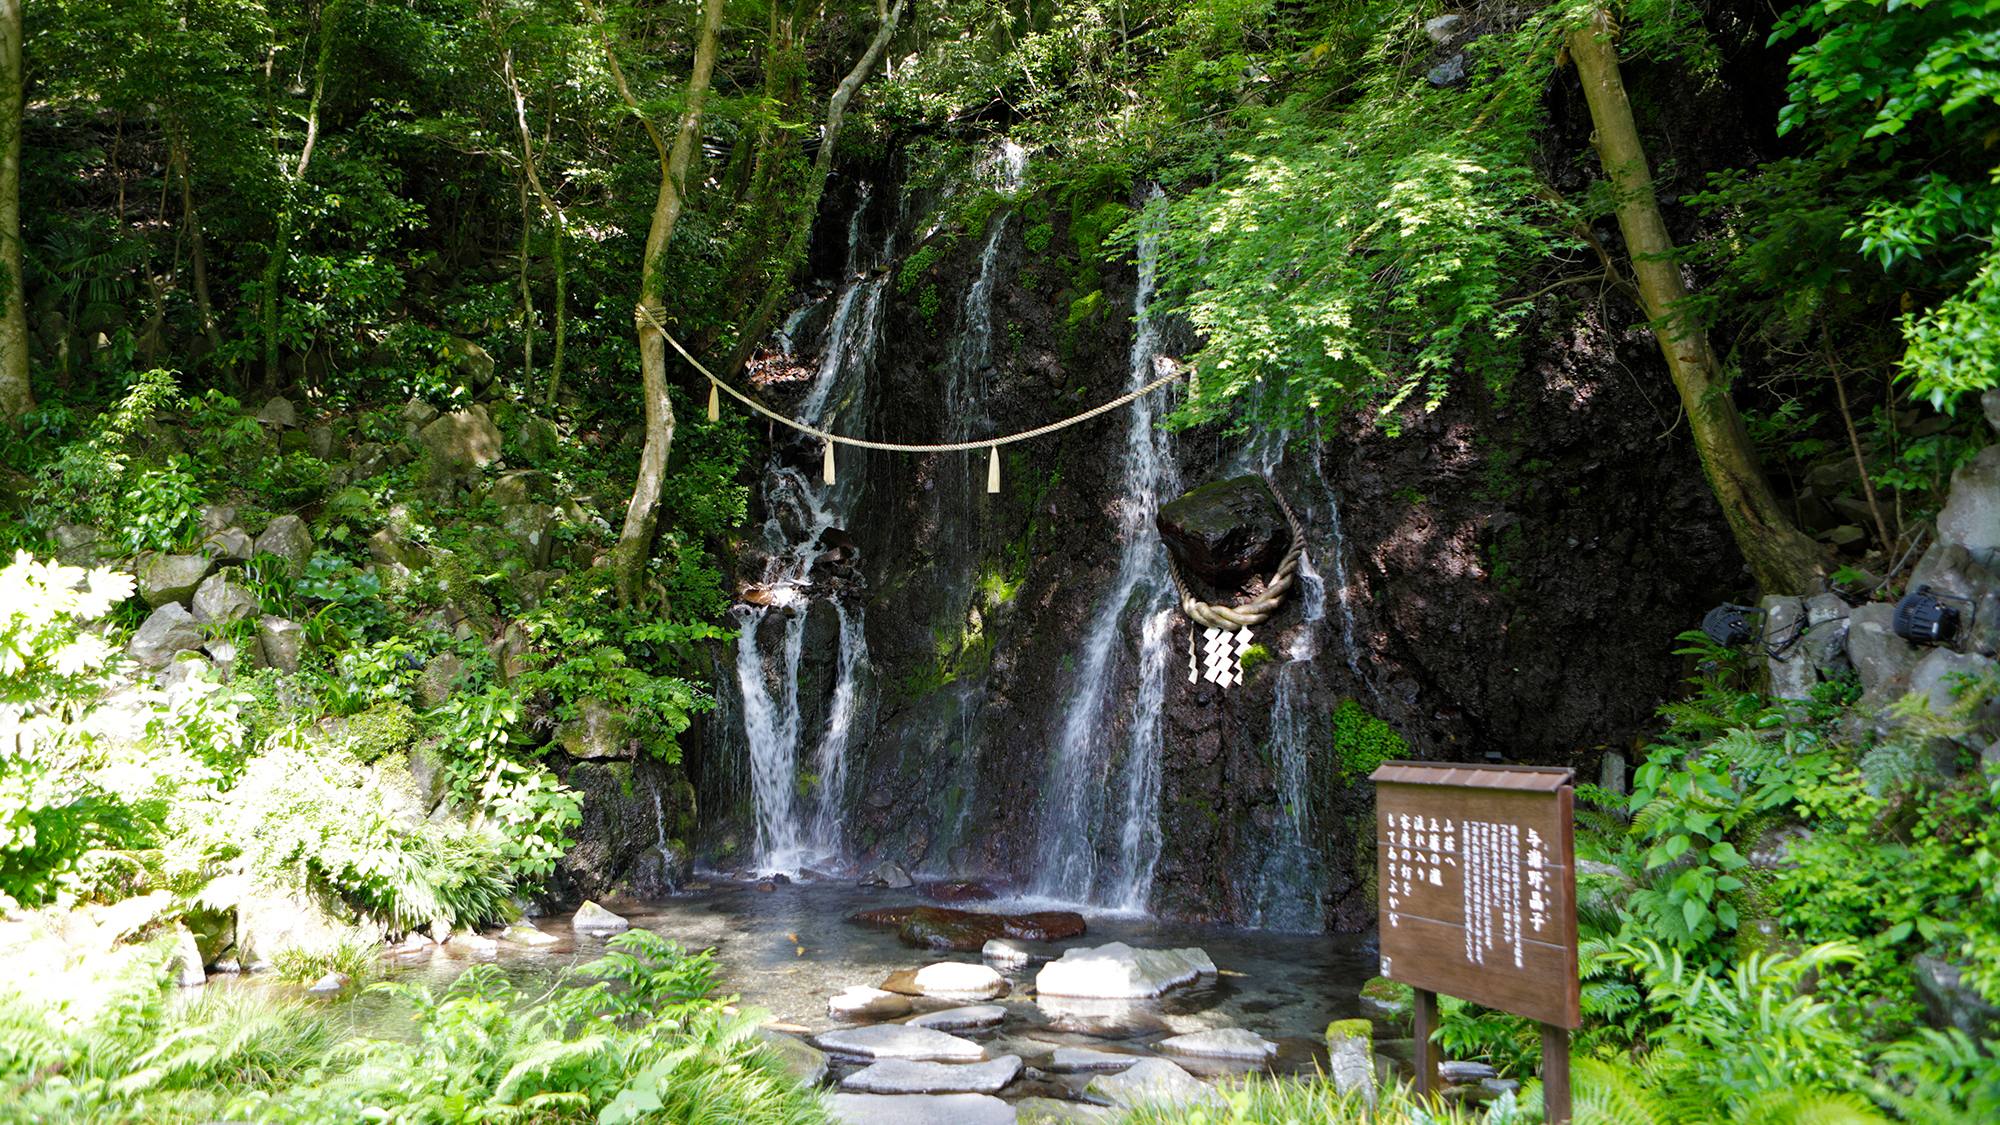 【庭園】玉簾の瀧・飛烟の滝でマイナスイオンを感じながら庭園散策